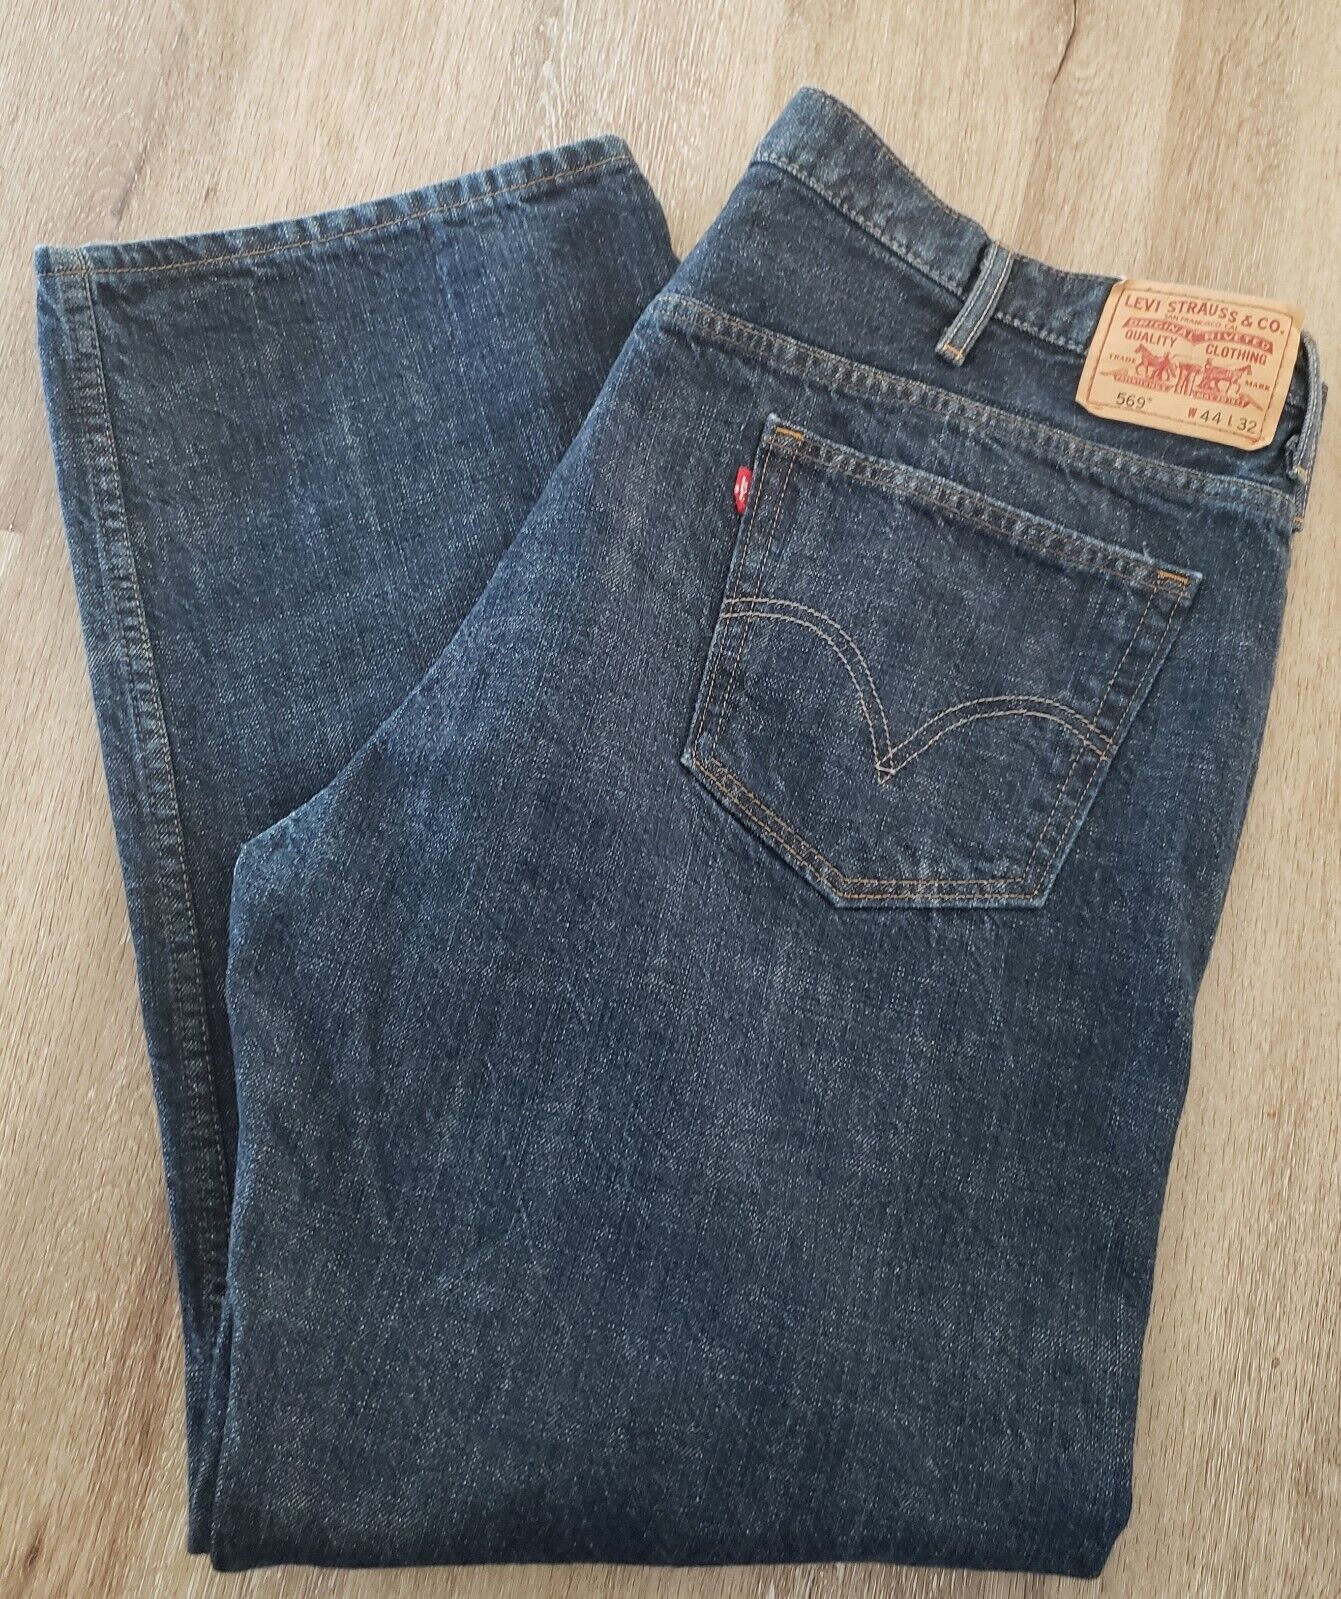 Levi's 569 Loose Straight Dark Wash Denim Jeans Men Big & Tall Size 44 x 31  | eBay